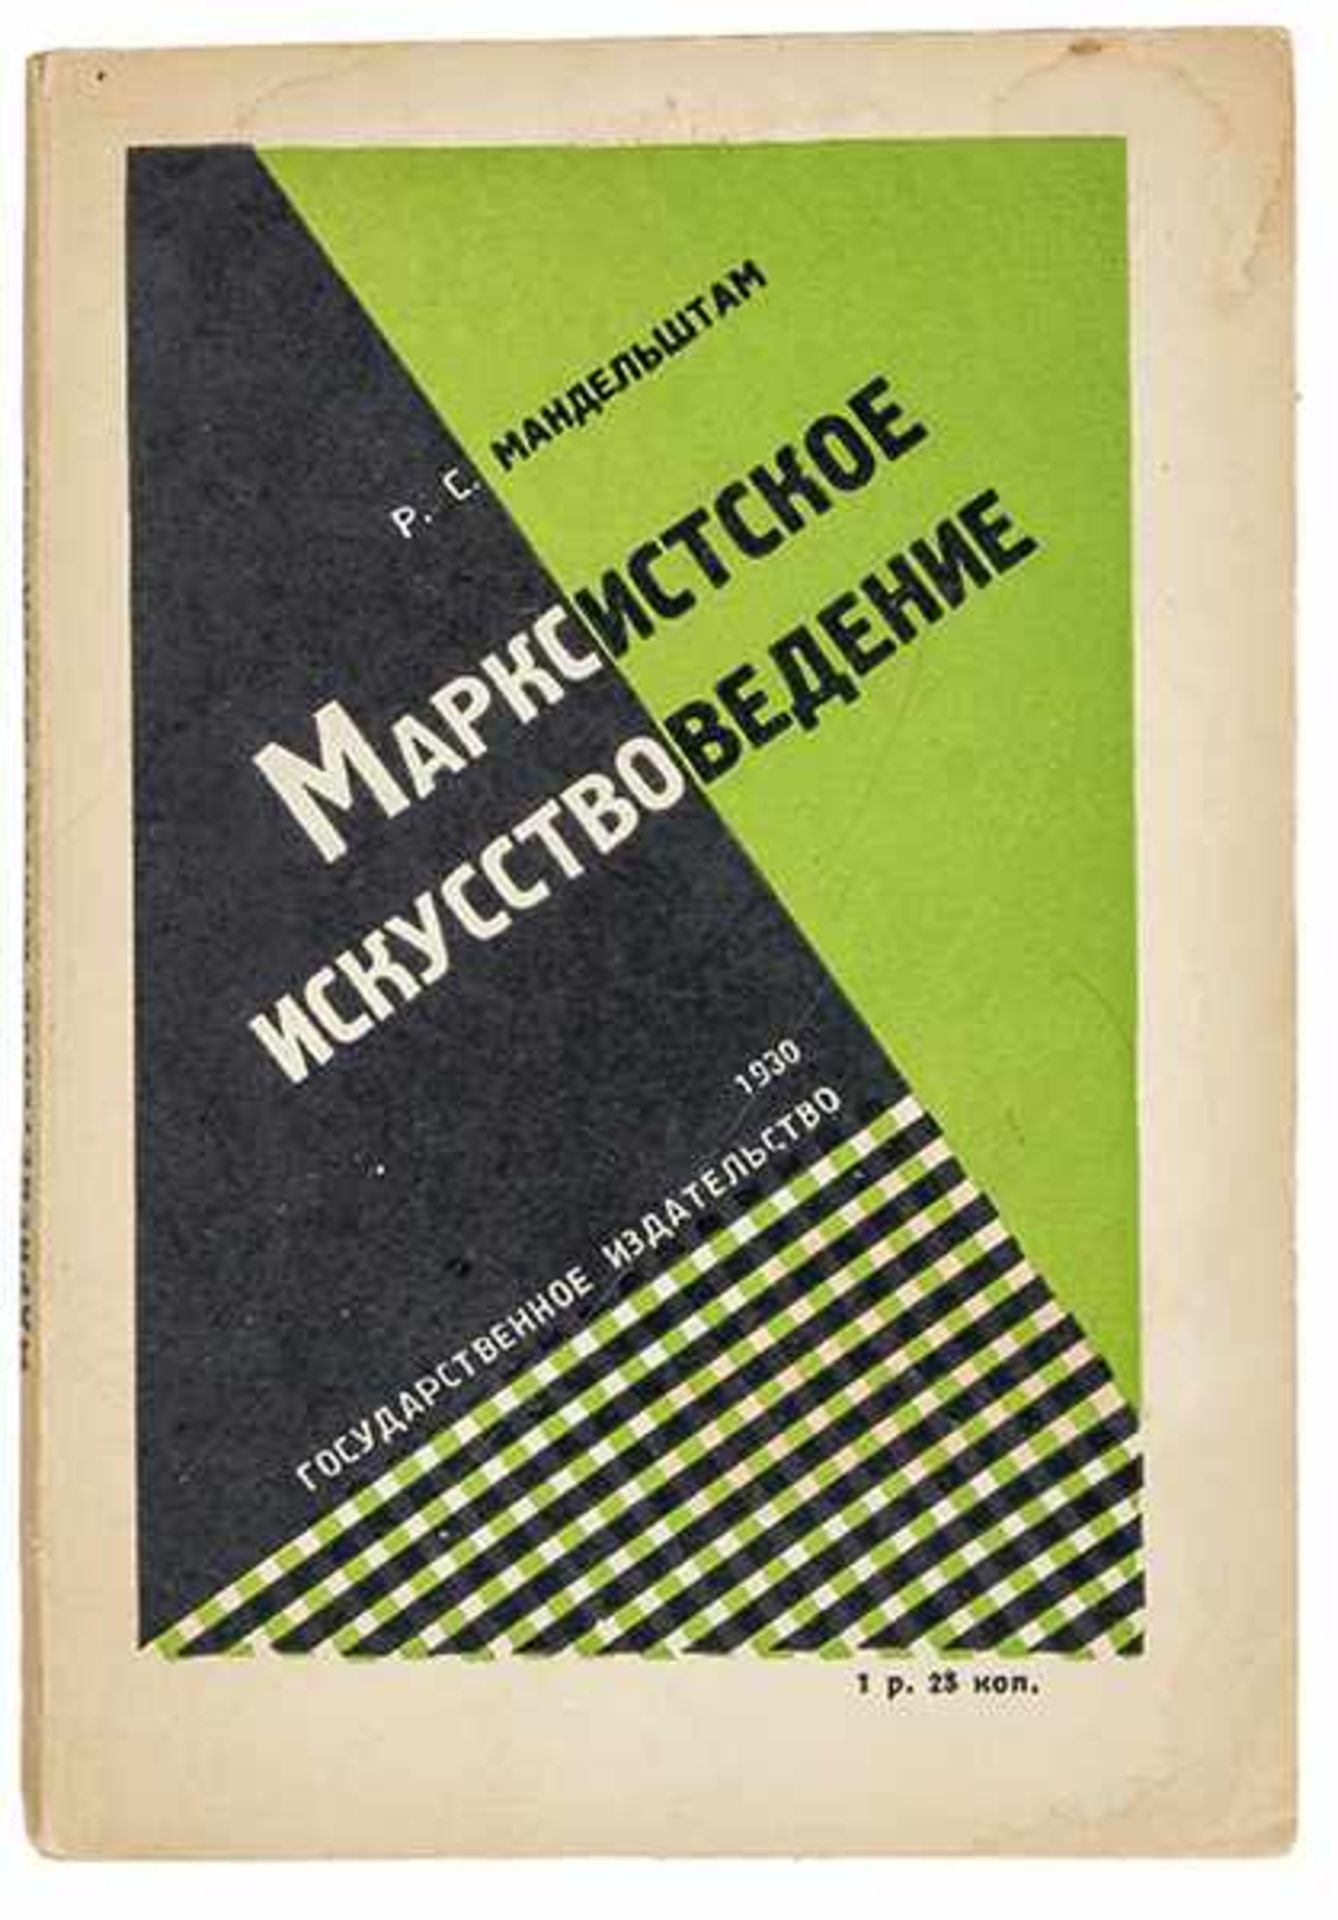 Russische Avantgarde - - Mandelstham, Roza S. Marksistkoe iskusstvovedenie. (Marxistische